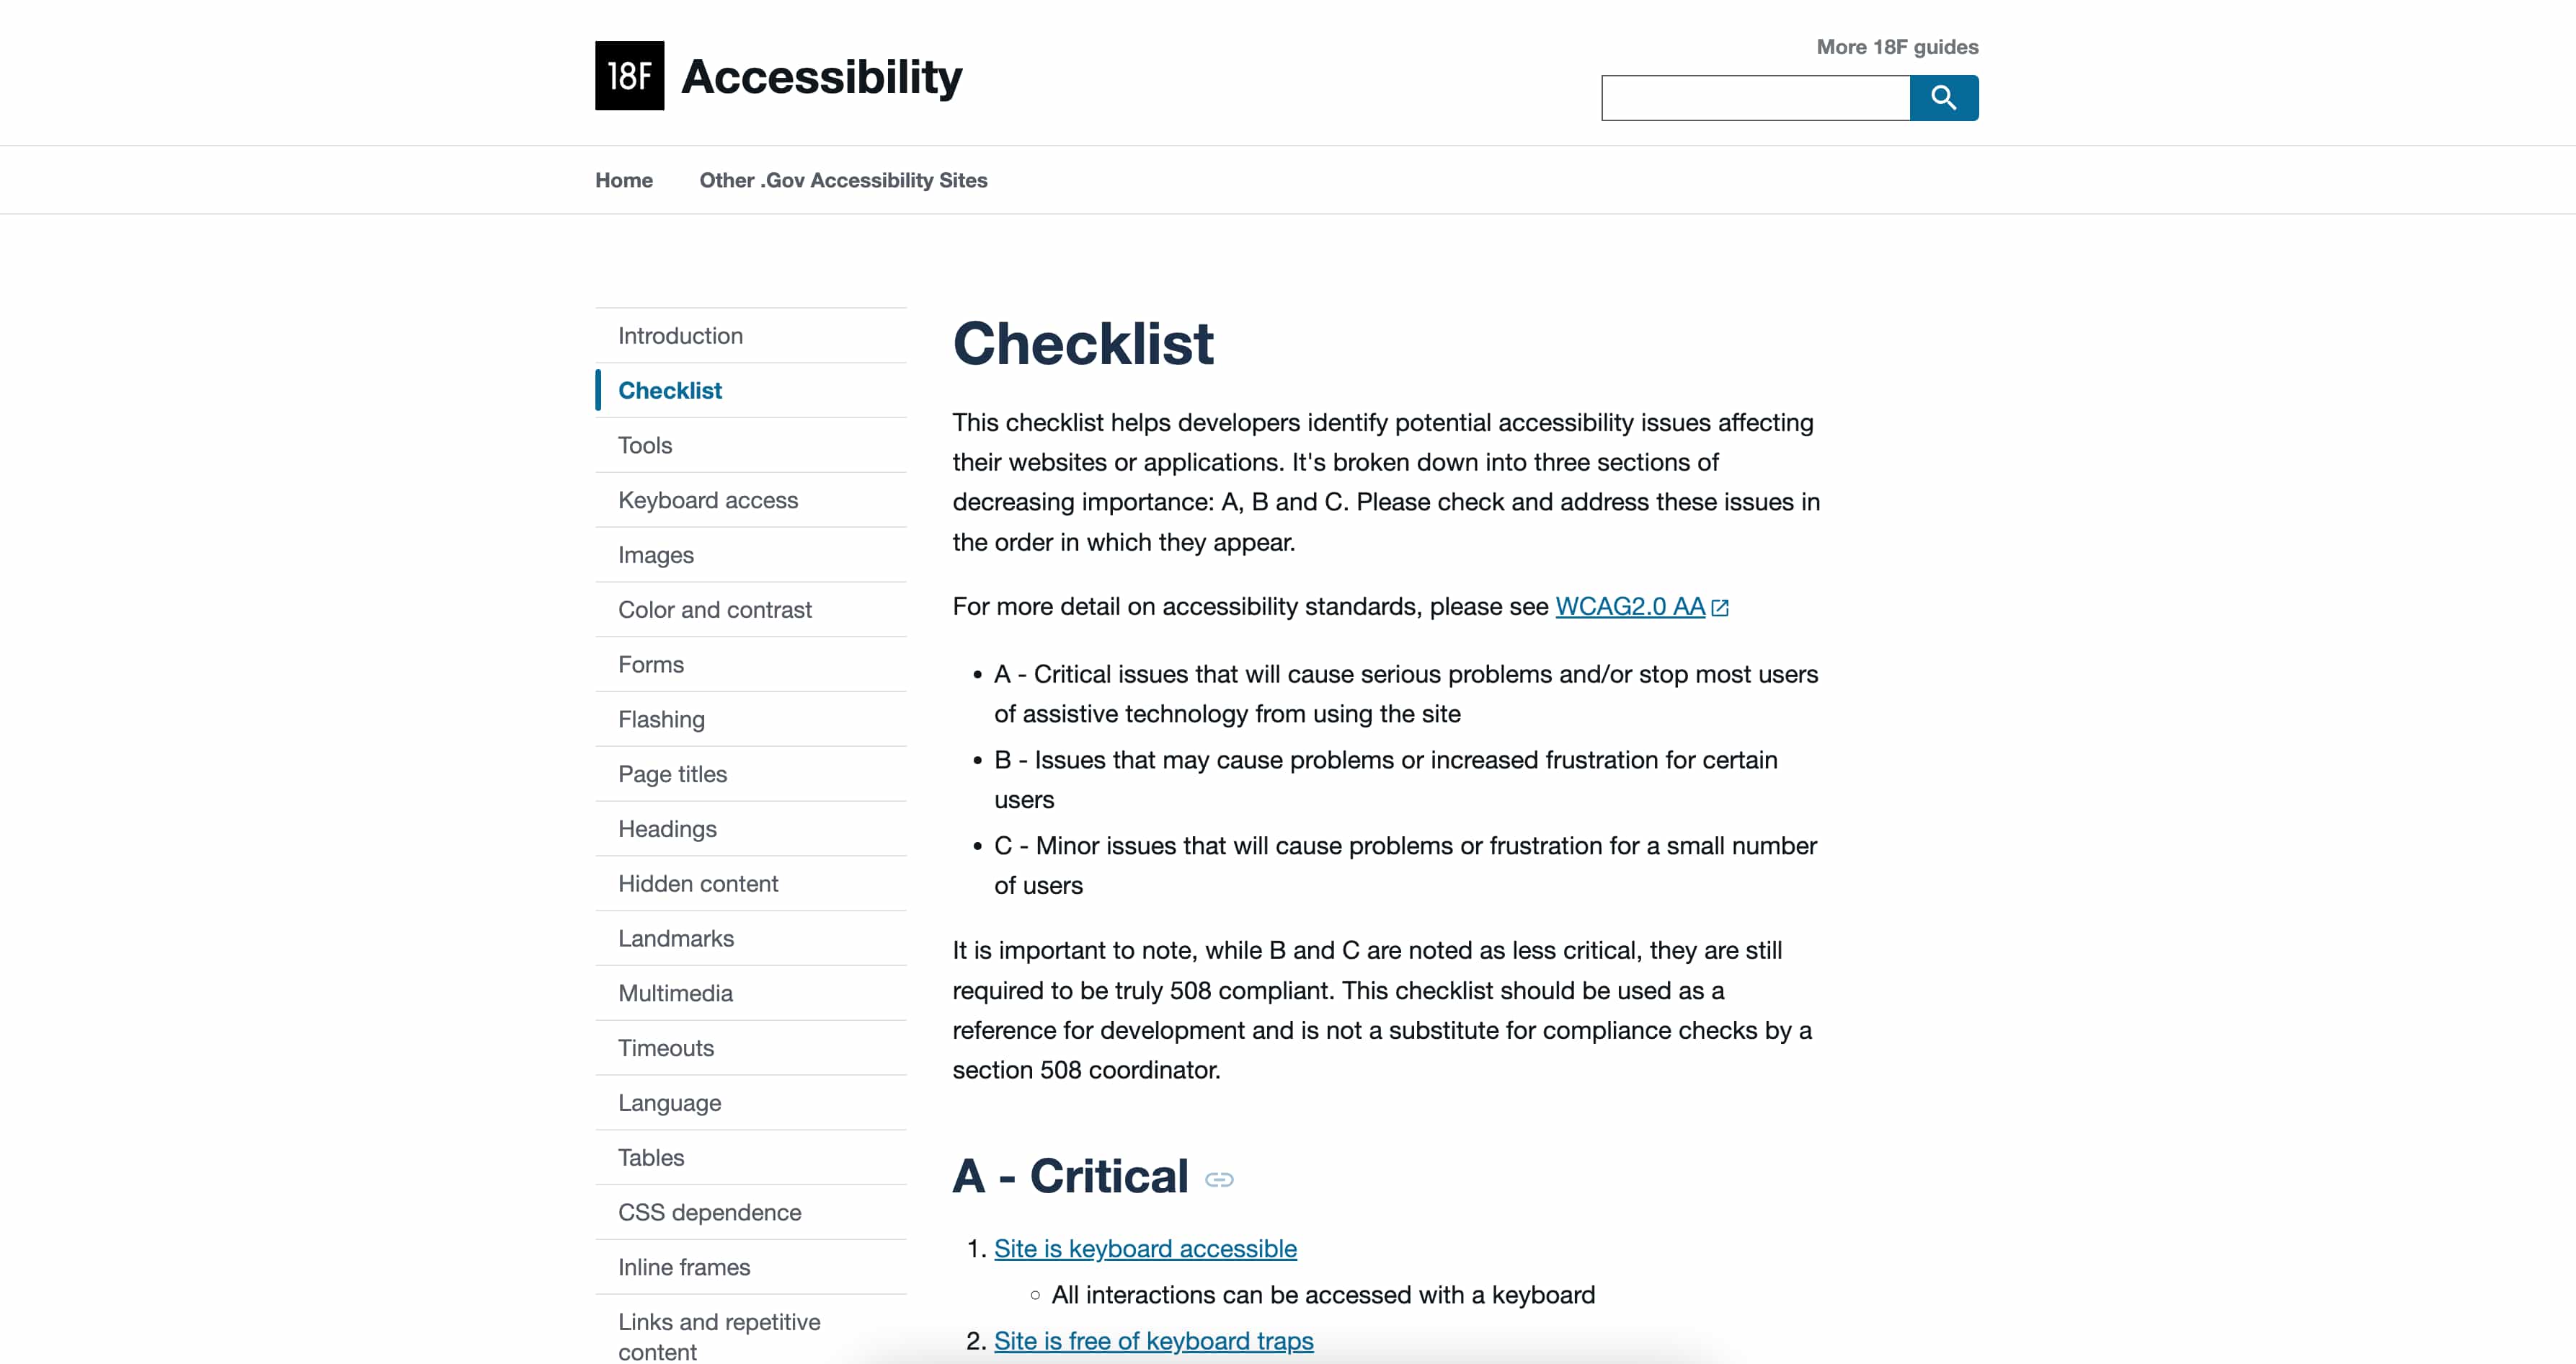 18F Accessibility Checklist